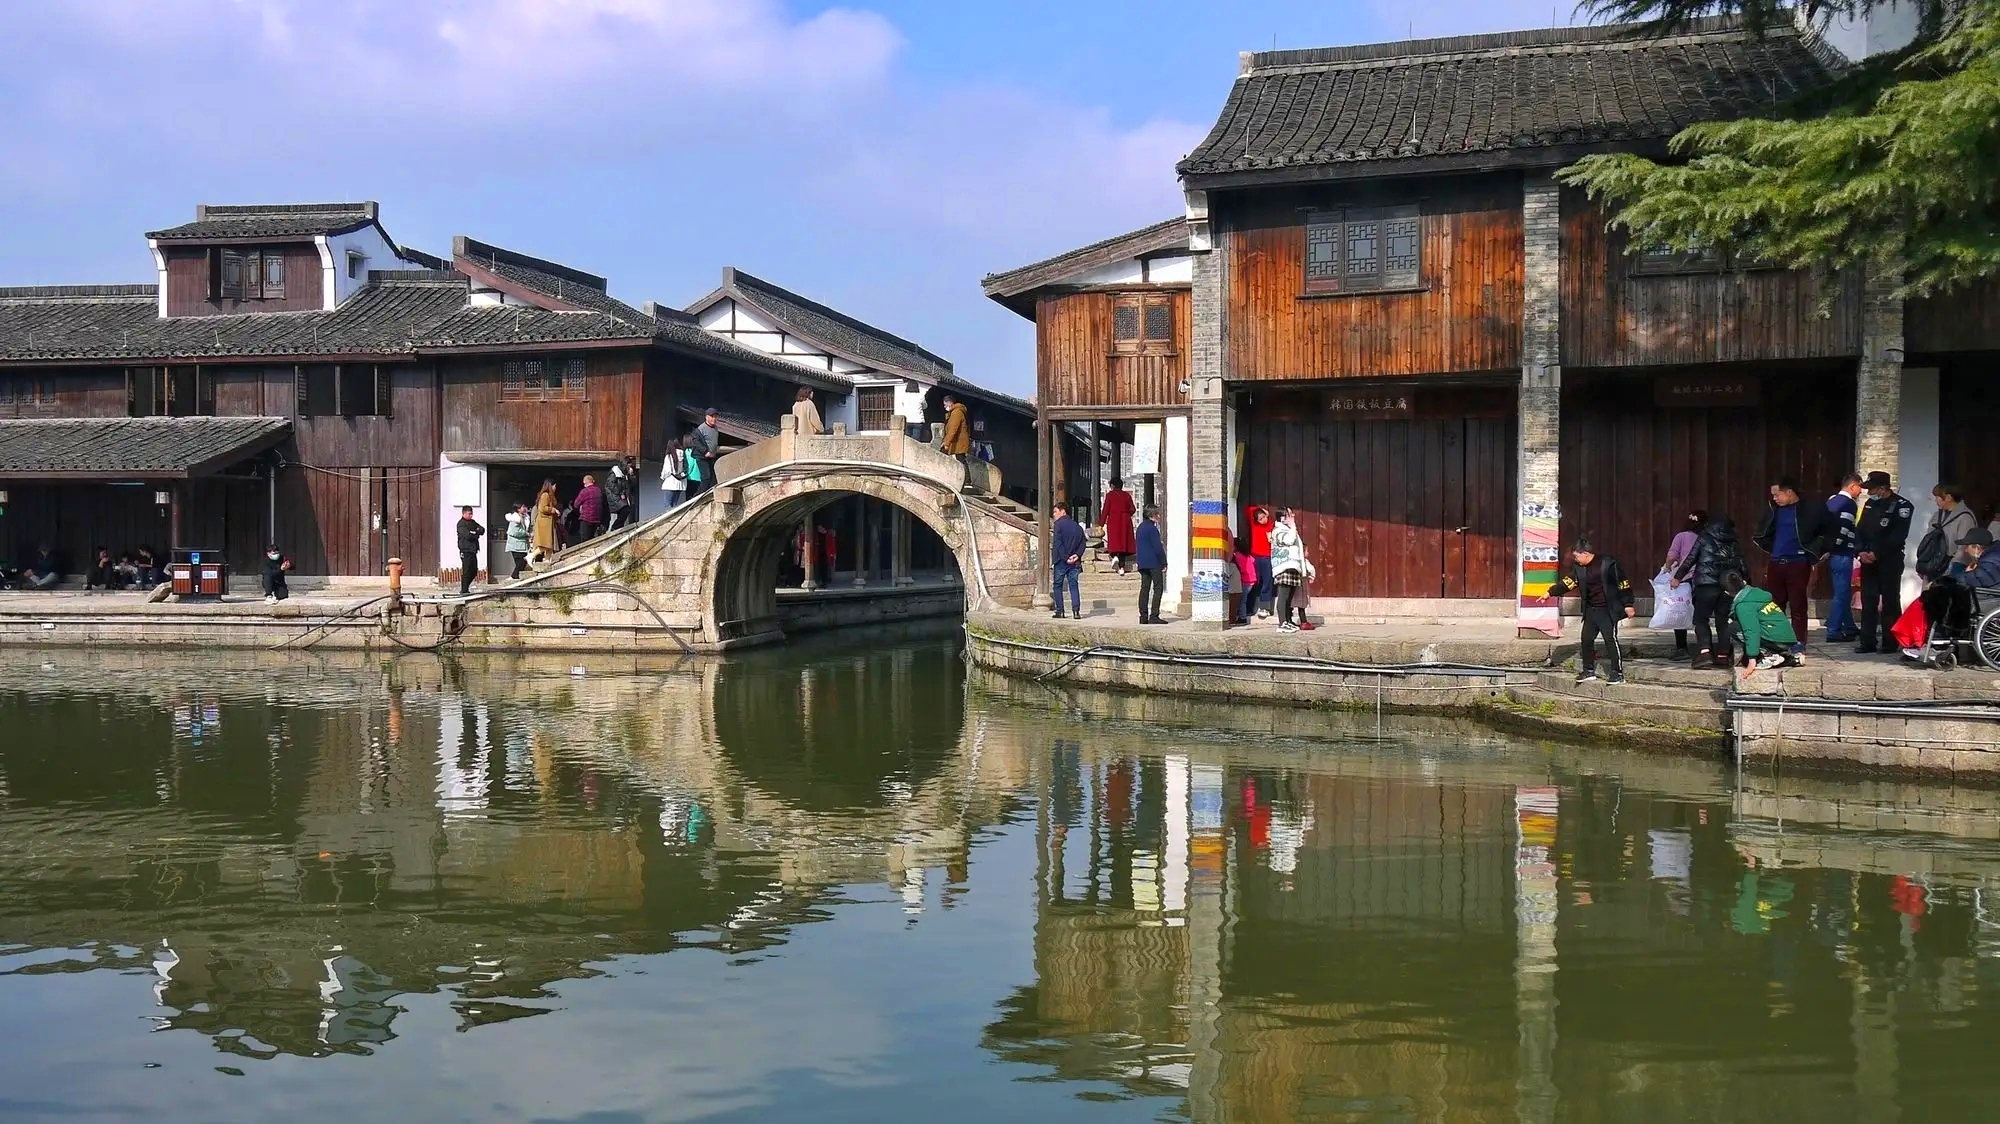 绍兴柯桥古镇景区:探寻历史与现代的完美融合